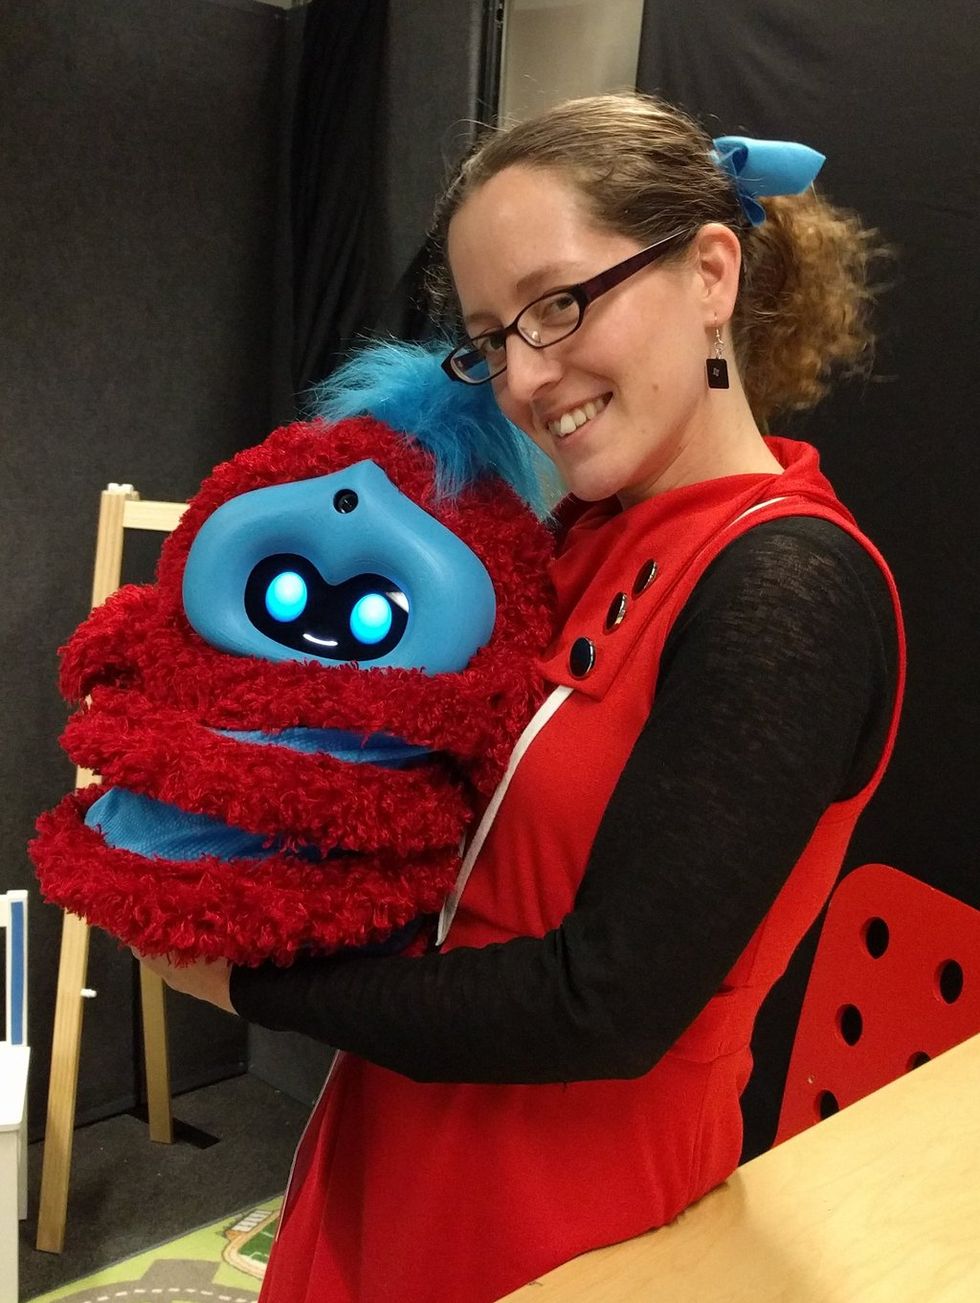 Jacqueline Kory Westlund with Tega robot